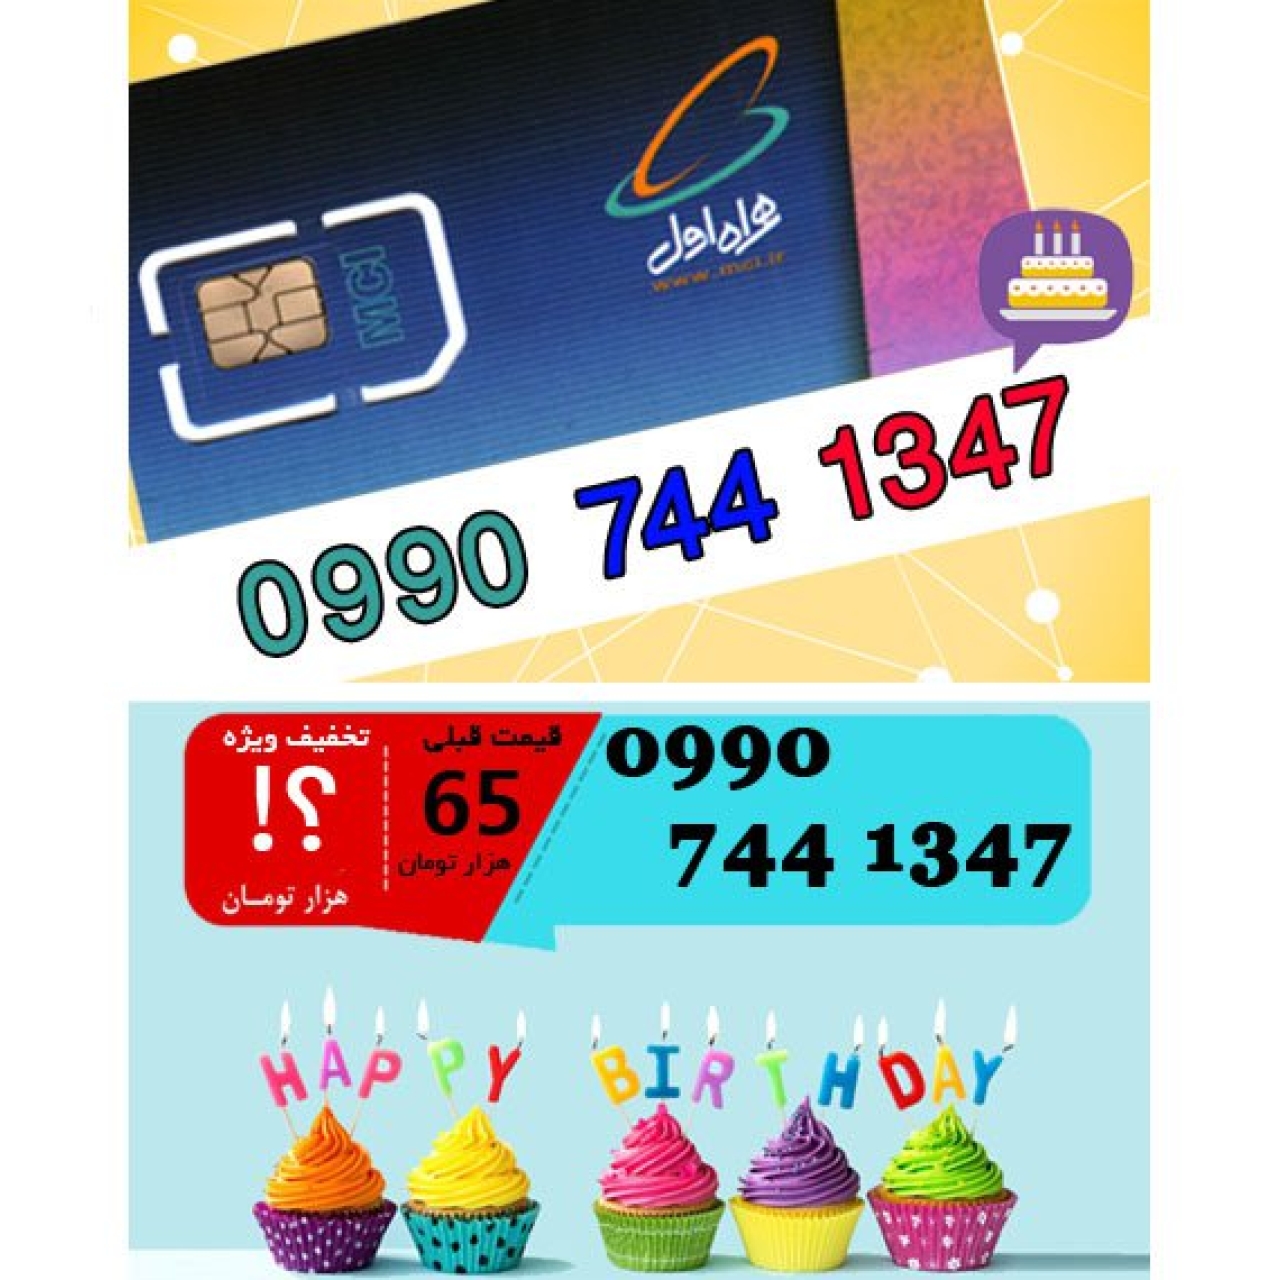 سیم کارت اعتباری همراه اول 09907441347 تاریخ تولد